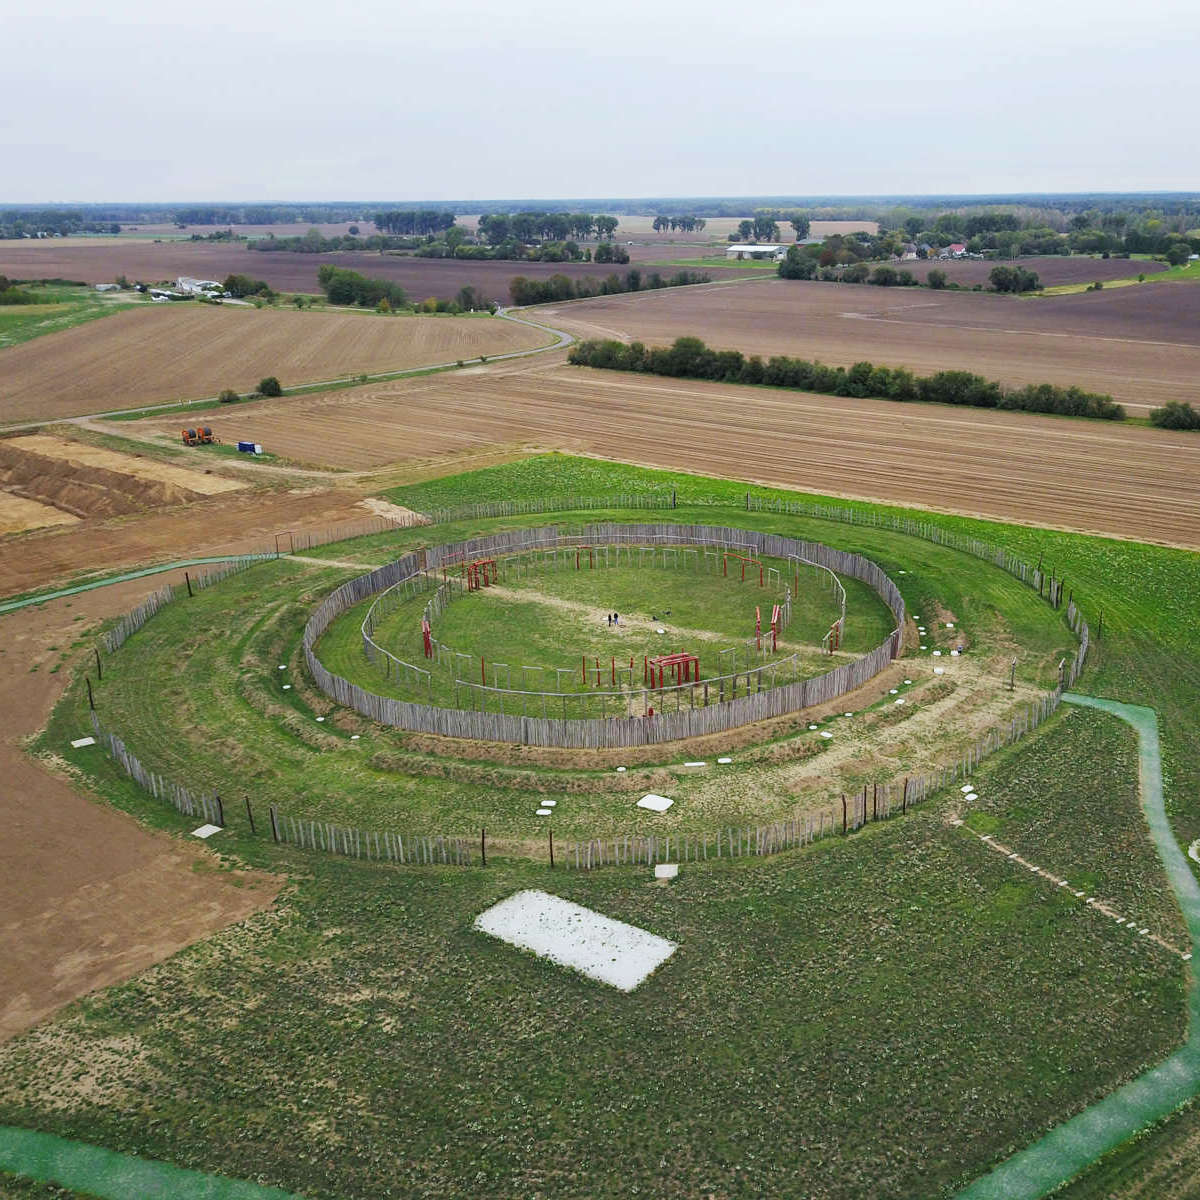 Luftbild der Kreisgrabenanlage Pömmelte aus dem Jahr 2018. © LDA, Foto: Matthias Zirm.